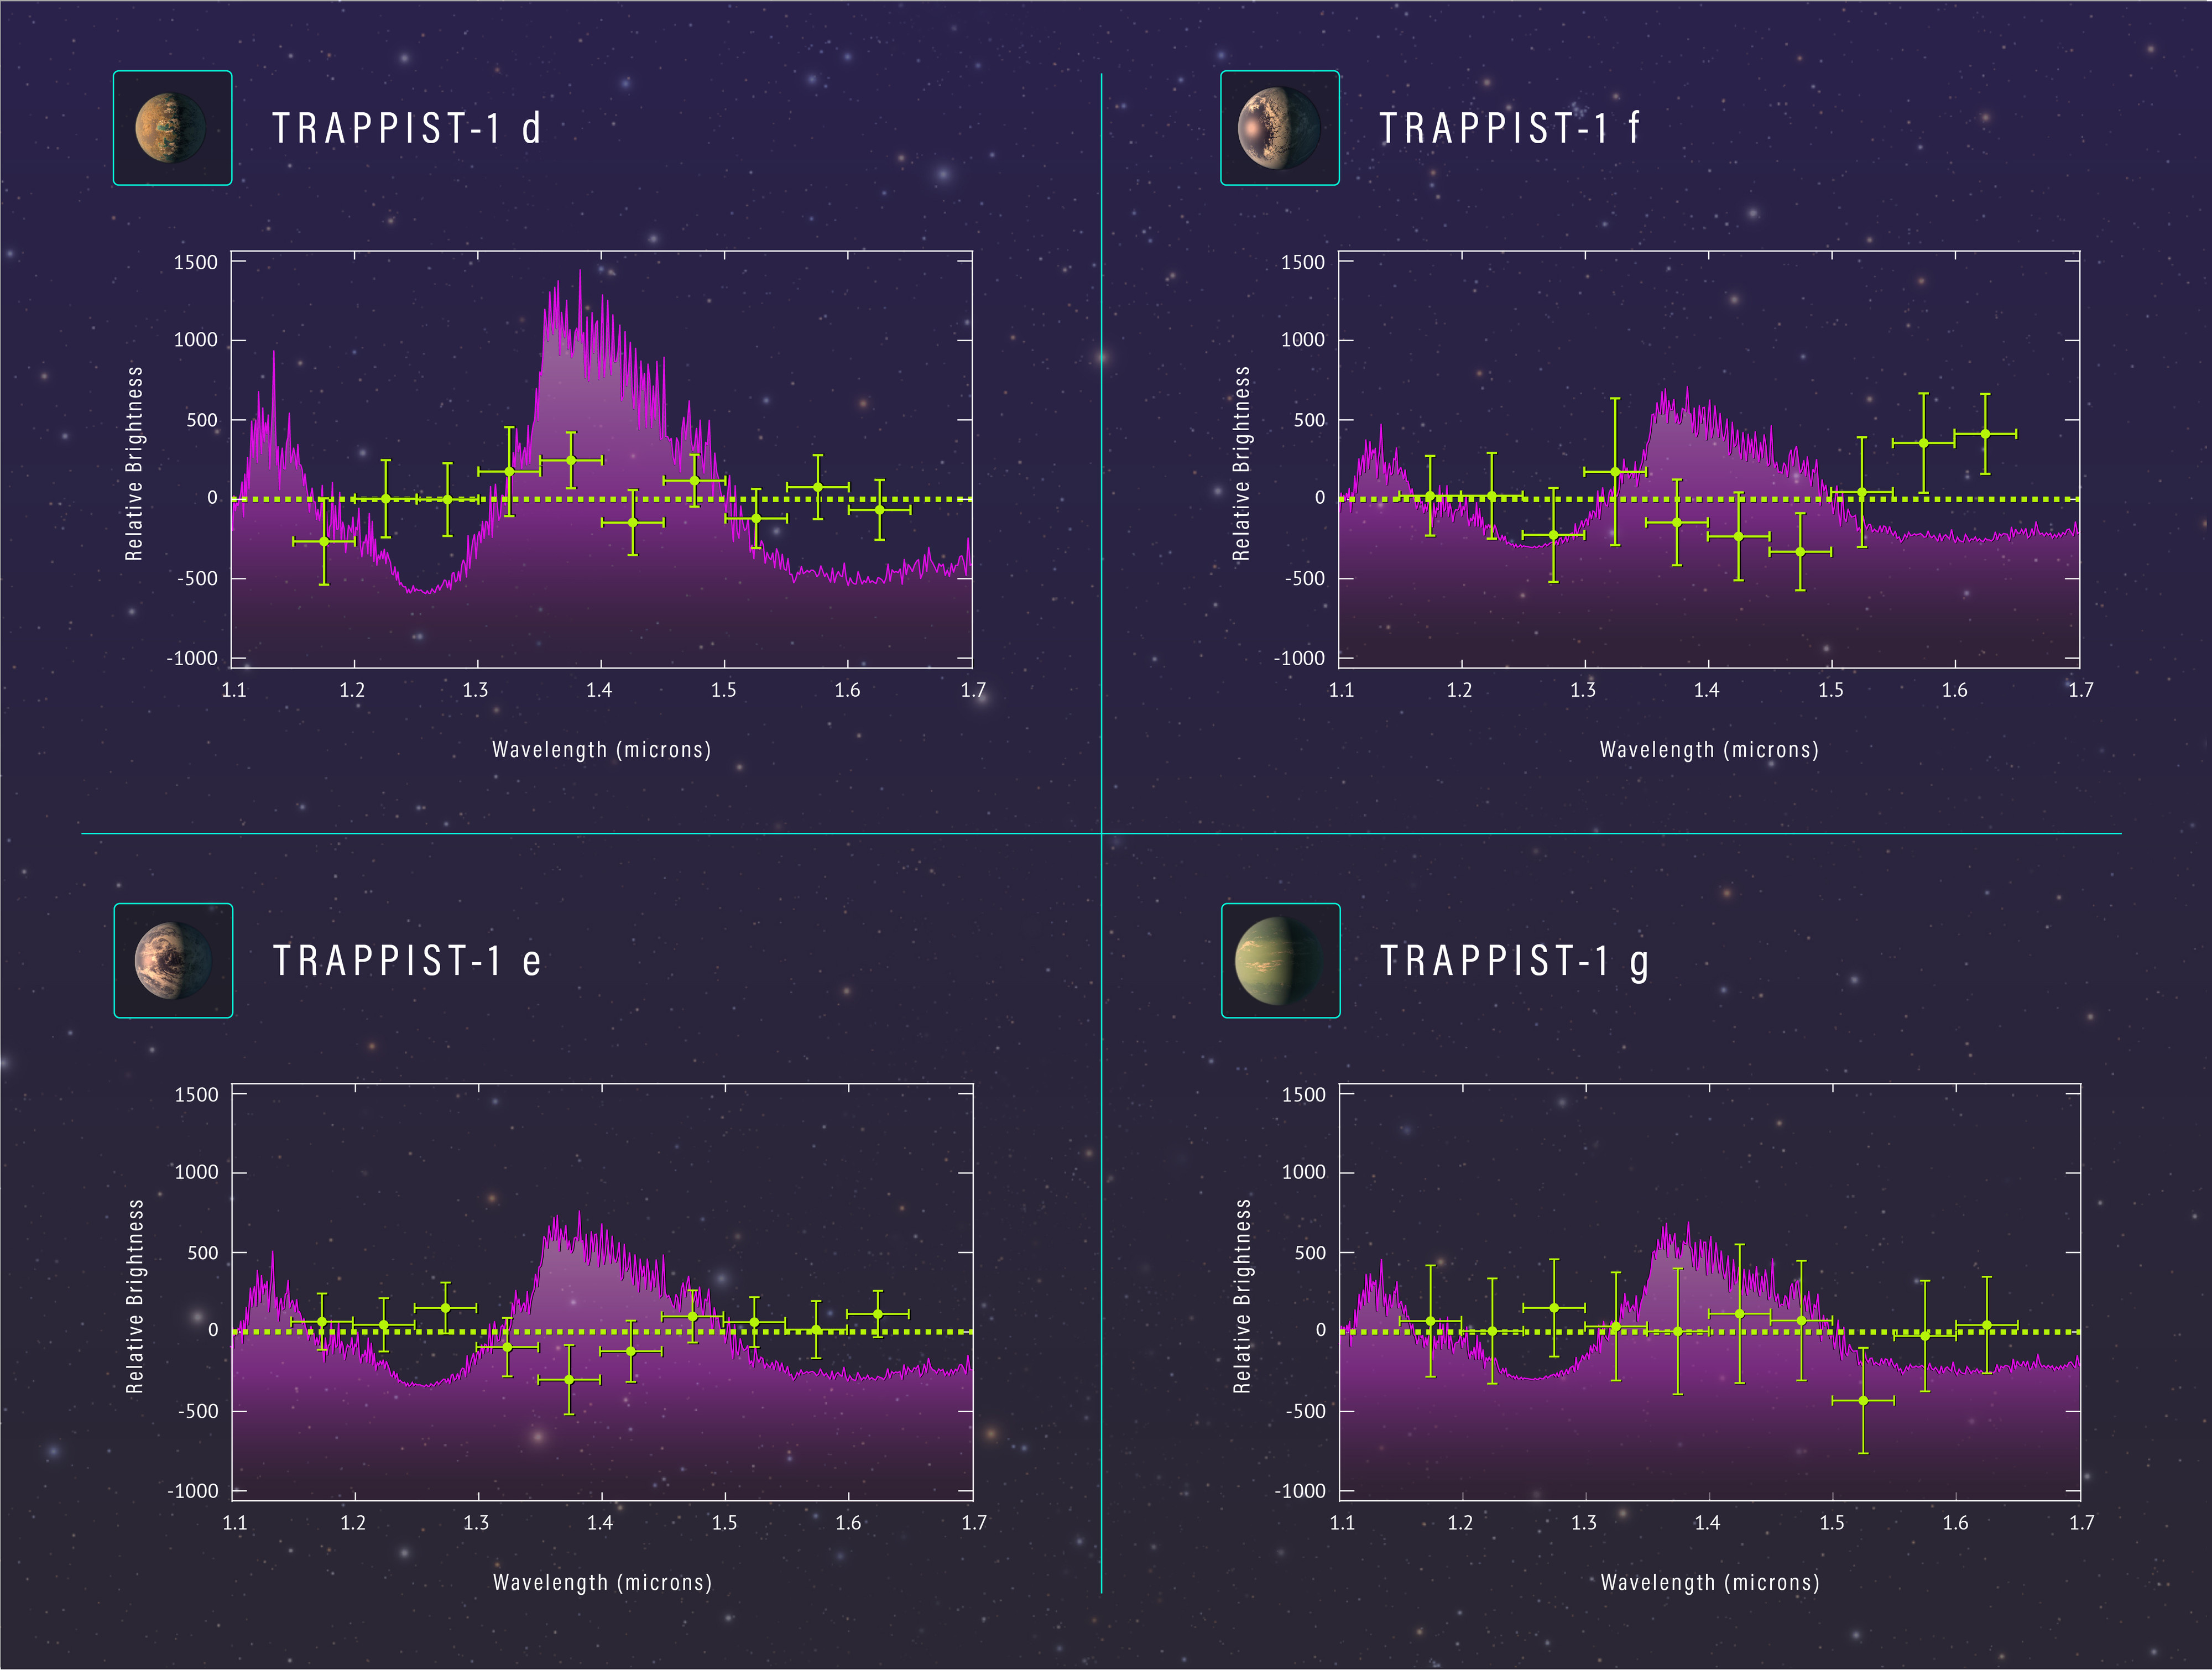 Widma transmisyjne w bliskiej podczerwieni atmosfer czterech egzoplanet krążących wokół gwiazdy TRAPPIST-1 (odległość 40 l.św. od Ziemi), które zostały wykonane przez Kosmiczny Teleskop Hubble’a. Widma prezentują chemiczną budowę atmosfer czterech egzoplanet o wielkości zbliżonej do Ziemi orbitujących wewnątrz lub w pobliżu ekosfery gwiazdy TRAPPIST-1. Krzywe w kolorze fioletowym pokazują przewidywane sygnatury gazów takich jak woda i metan, które absorbują tylko wybrane długości fali promieniowania. Te gazy powinno dać się znaleźć w rozdętych atmosferach z wodorem jako głównych składnikiem – jak w gazowych planetach podobnych do Neptuna. Obserwacje spektroskopowe uzyskane Teleskopem Hubble’a są oznaczone zielonymi krzyżykami i nie ujawniają rozciągłych atmosfer dla trzech egzoplanet TRAPPIST-1 d, f, e. Natomiast są konieczne dalsze obserwacje dla czwartej egzoplanety TRAPPIST-1 g, aby zweryfikować, czy posiada rozciągłą atmosferę wodorową. Źródło: NASA, ESA and Z. Levy (STScI)